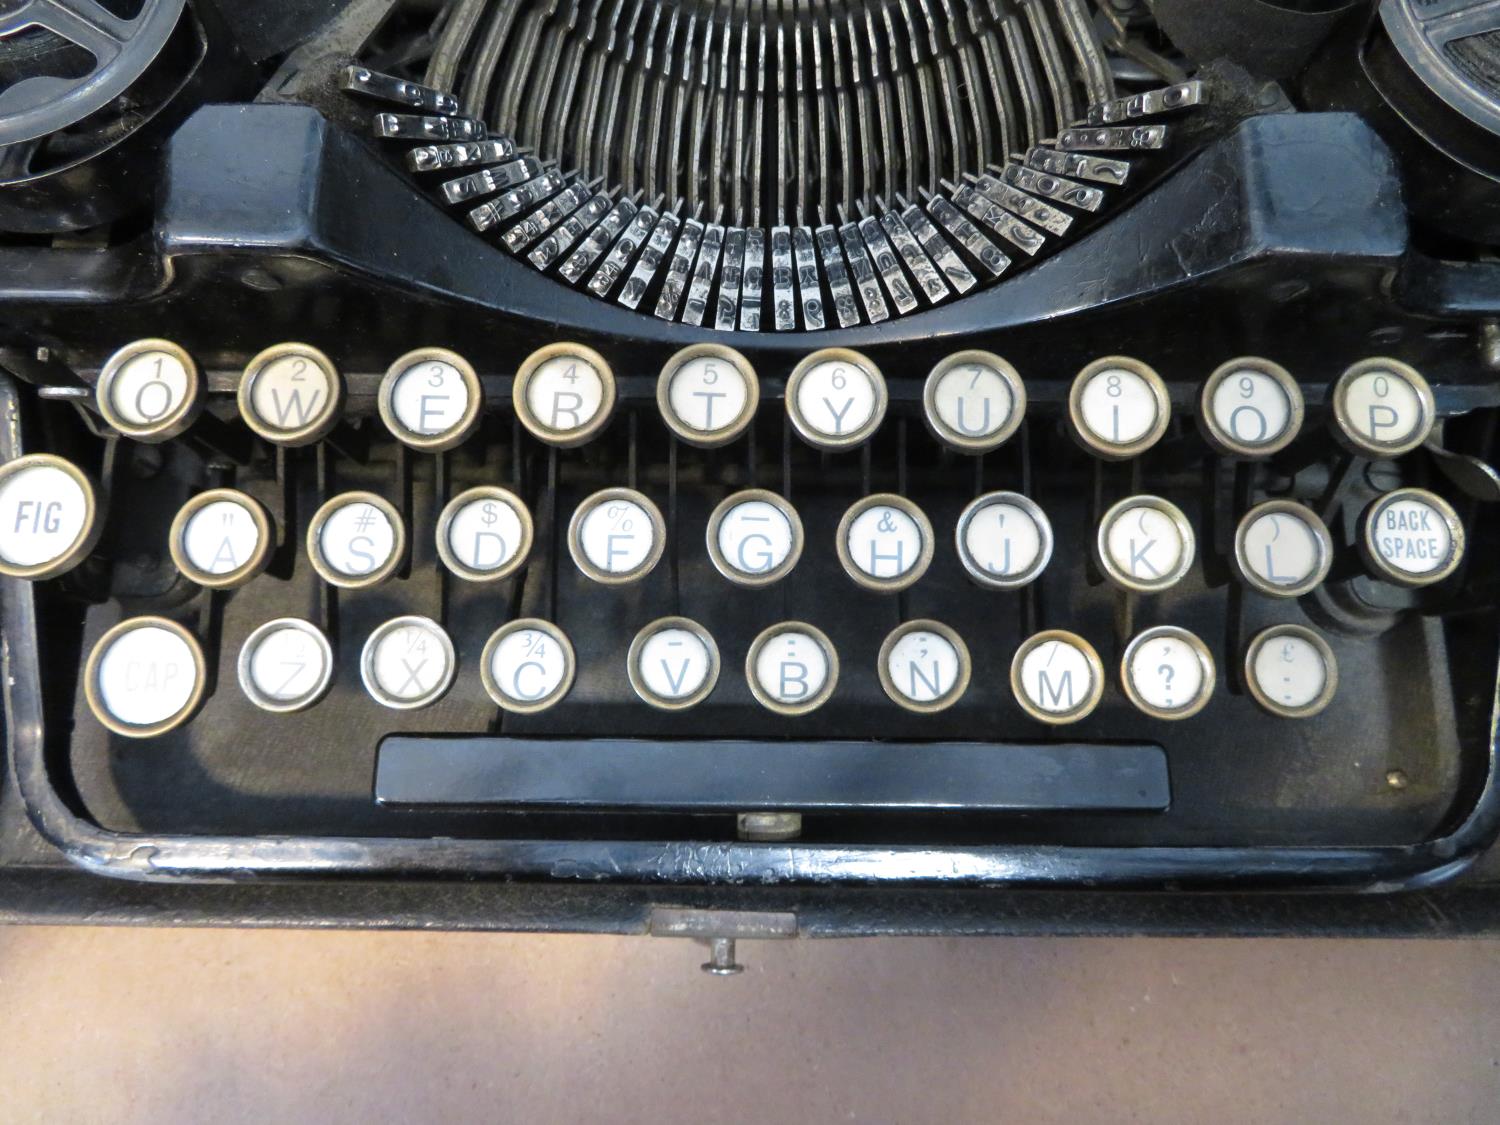 Underwood typewriter - Image 2 of 4